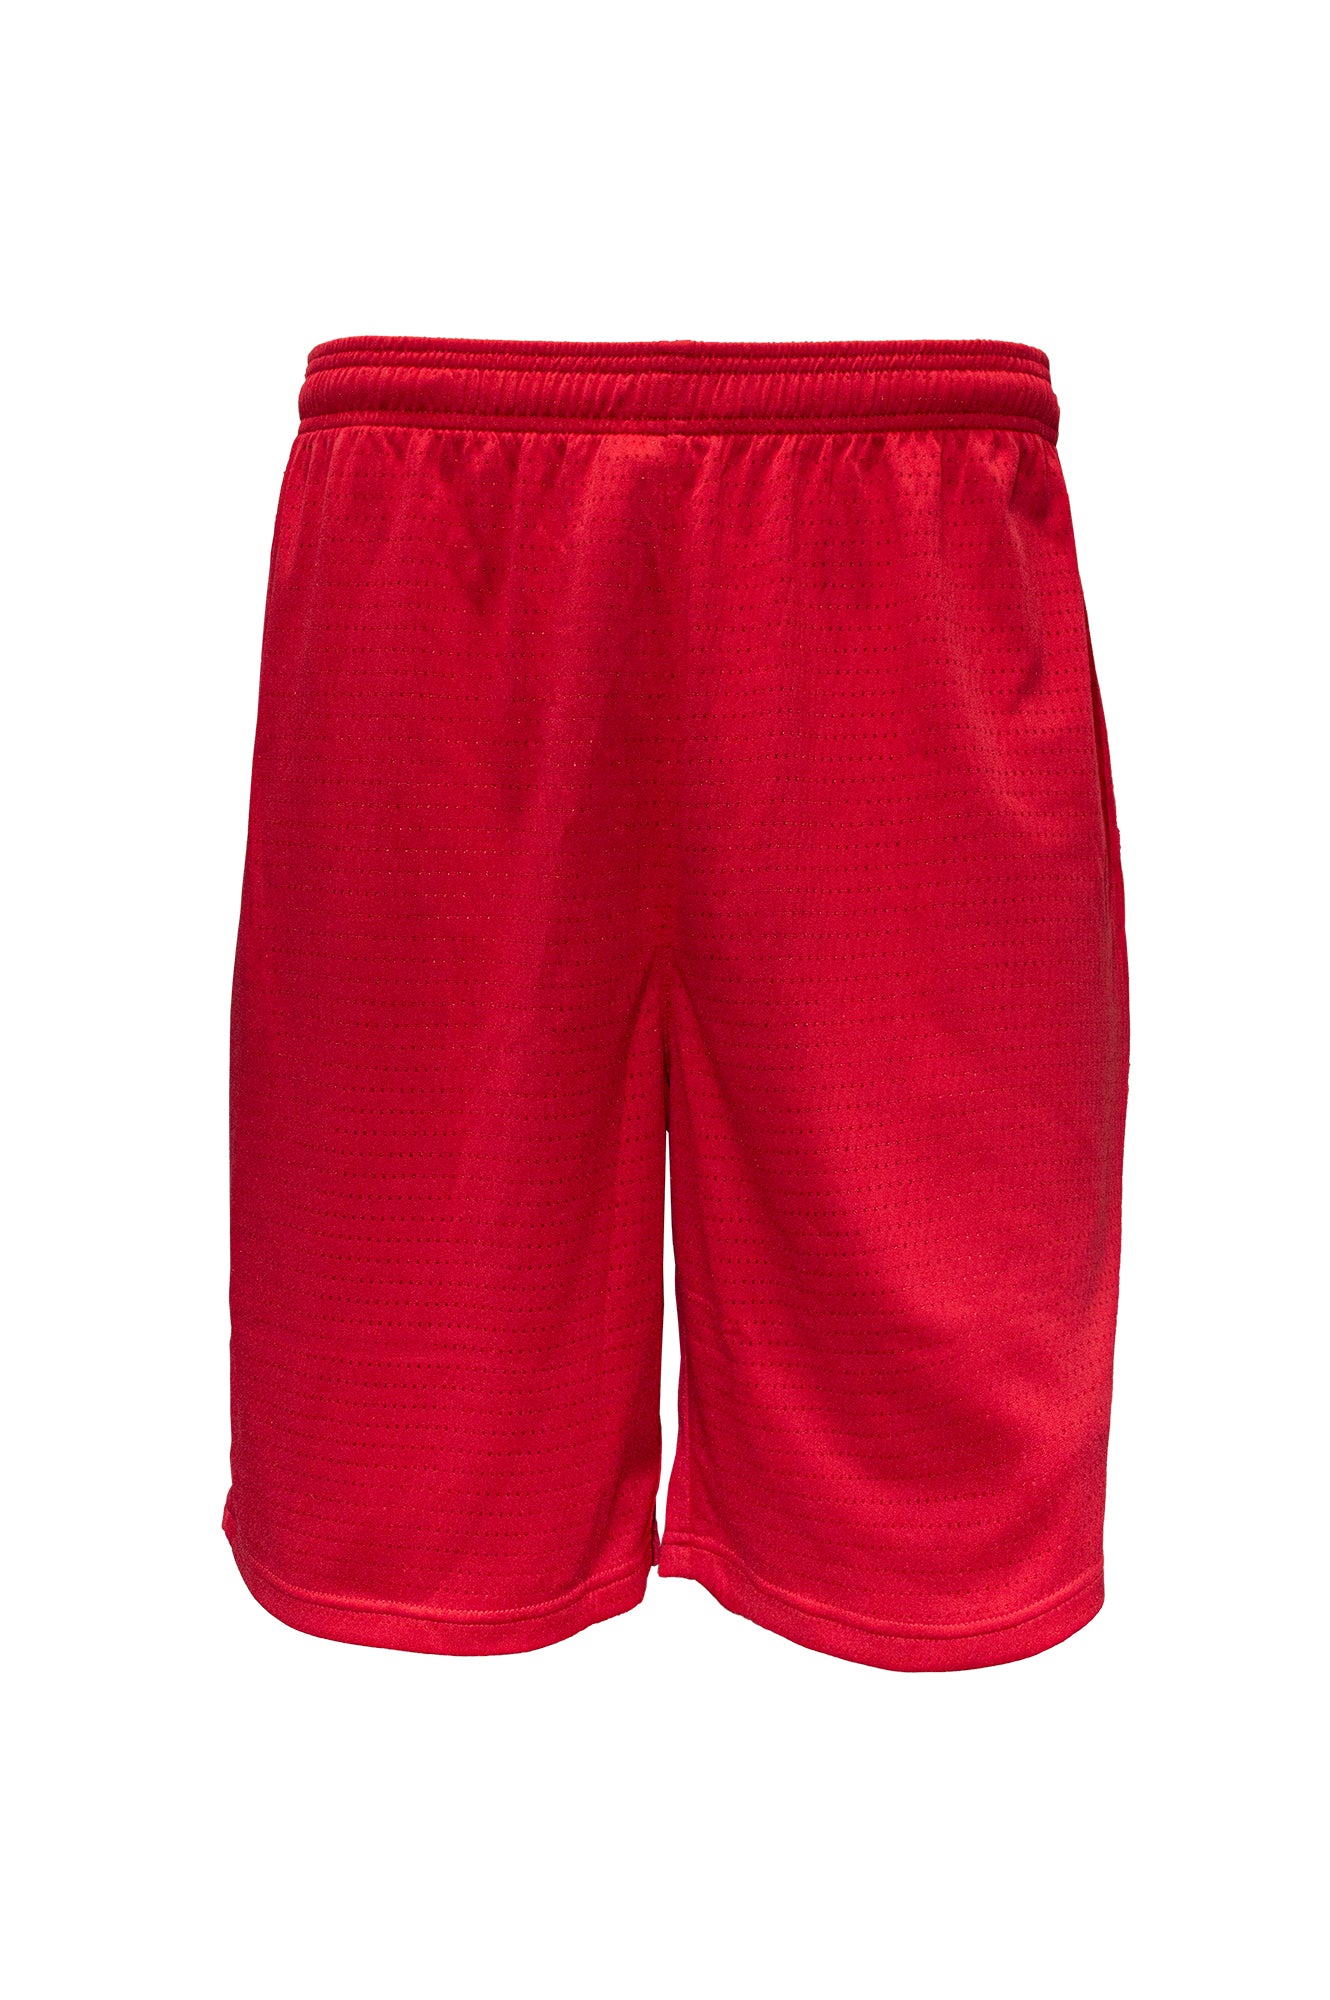 Swish Mens Basketball Shorts - Red